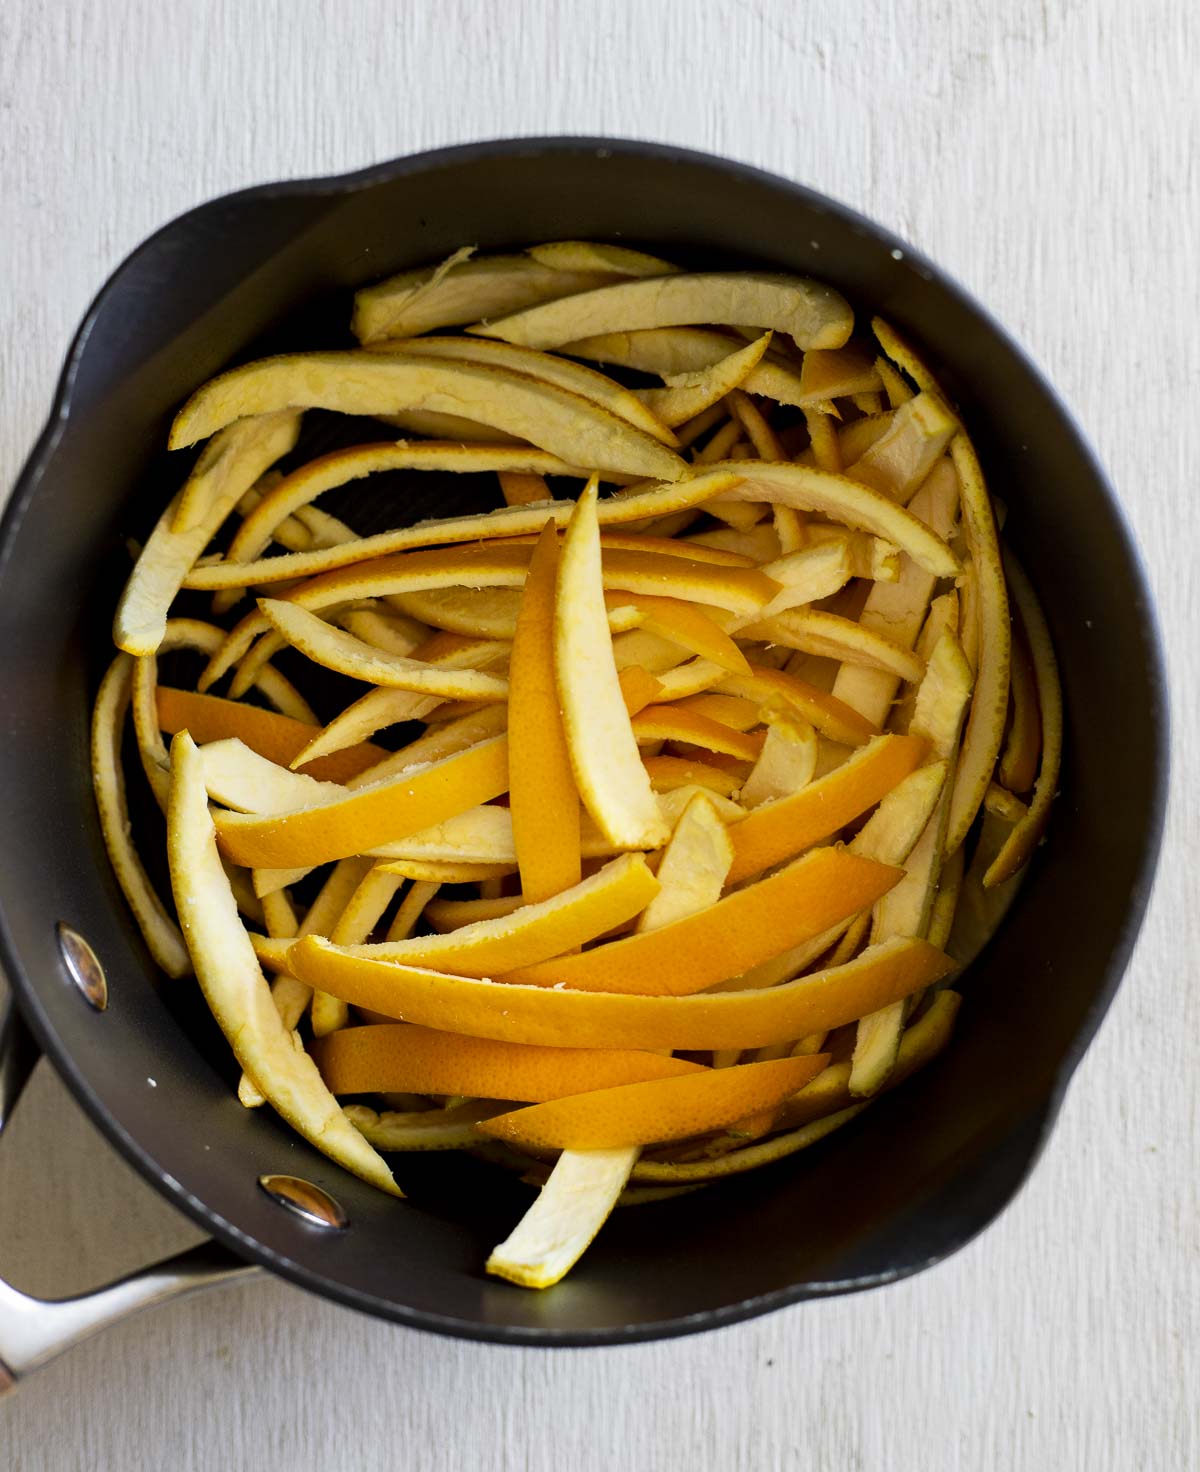 sliced orange peels in a saucepan